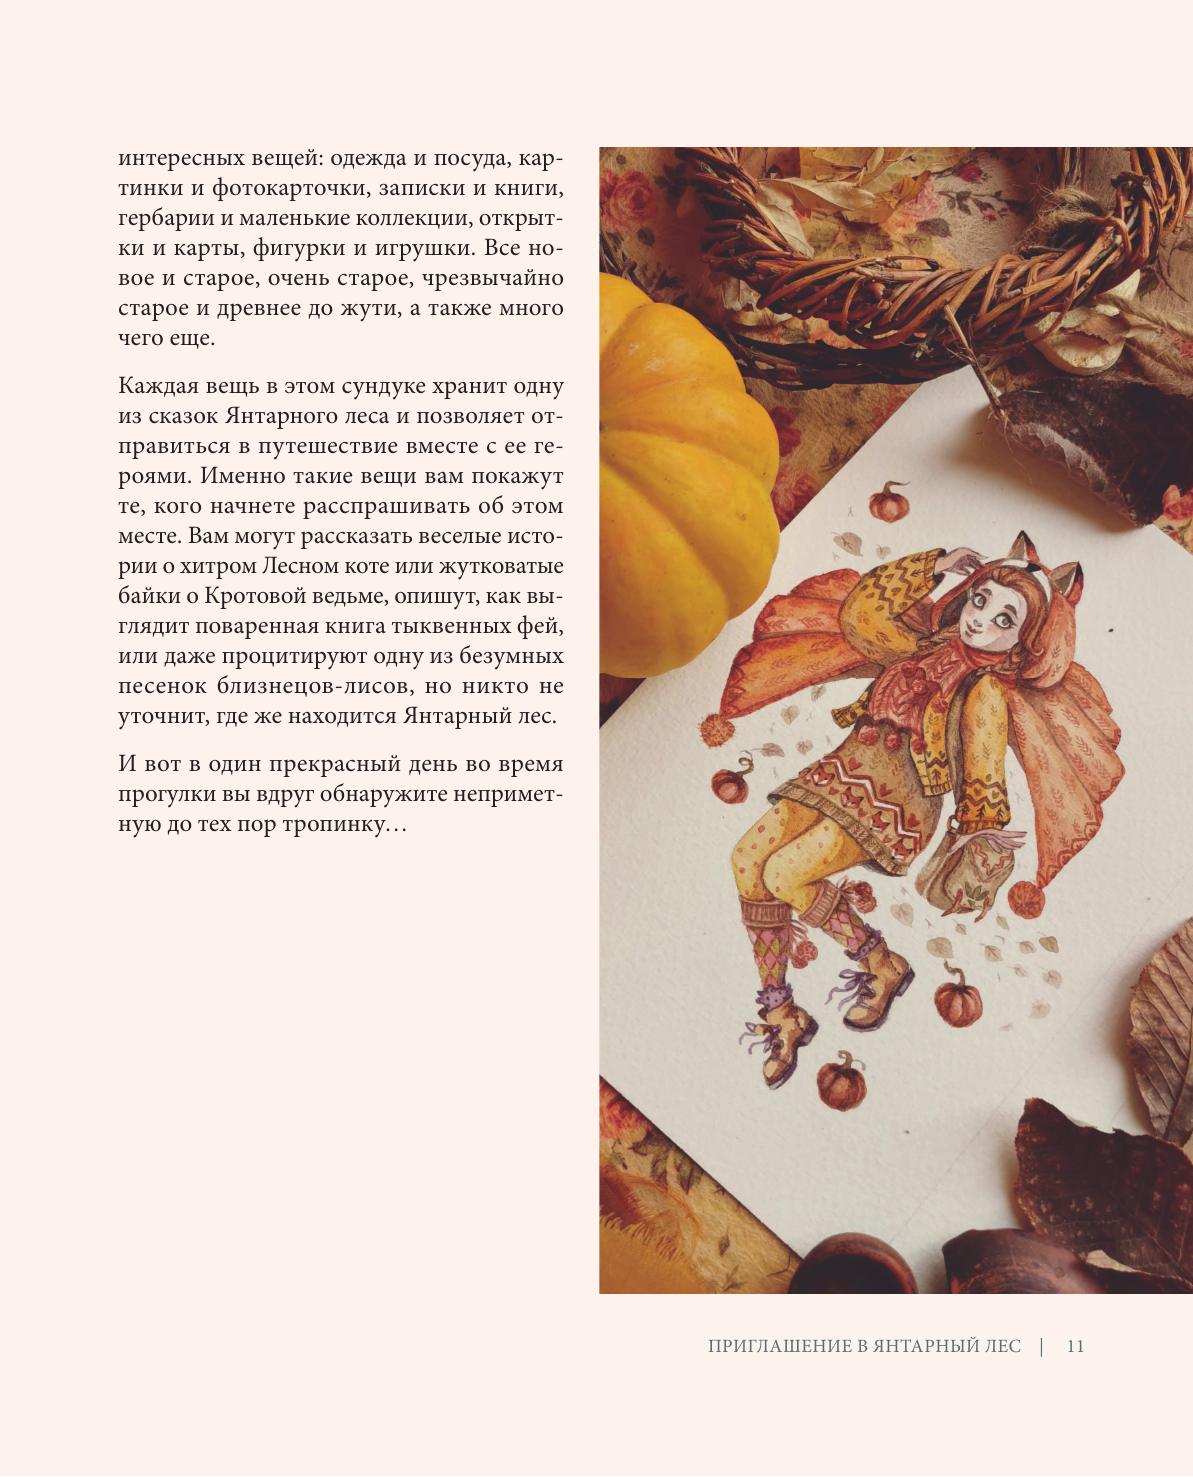 Сказки Янтарного леса. Вышивка «свободной рукой» и немного магии от AmberryLamb - фото №10